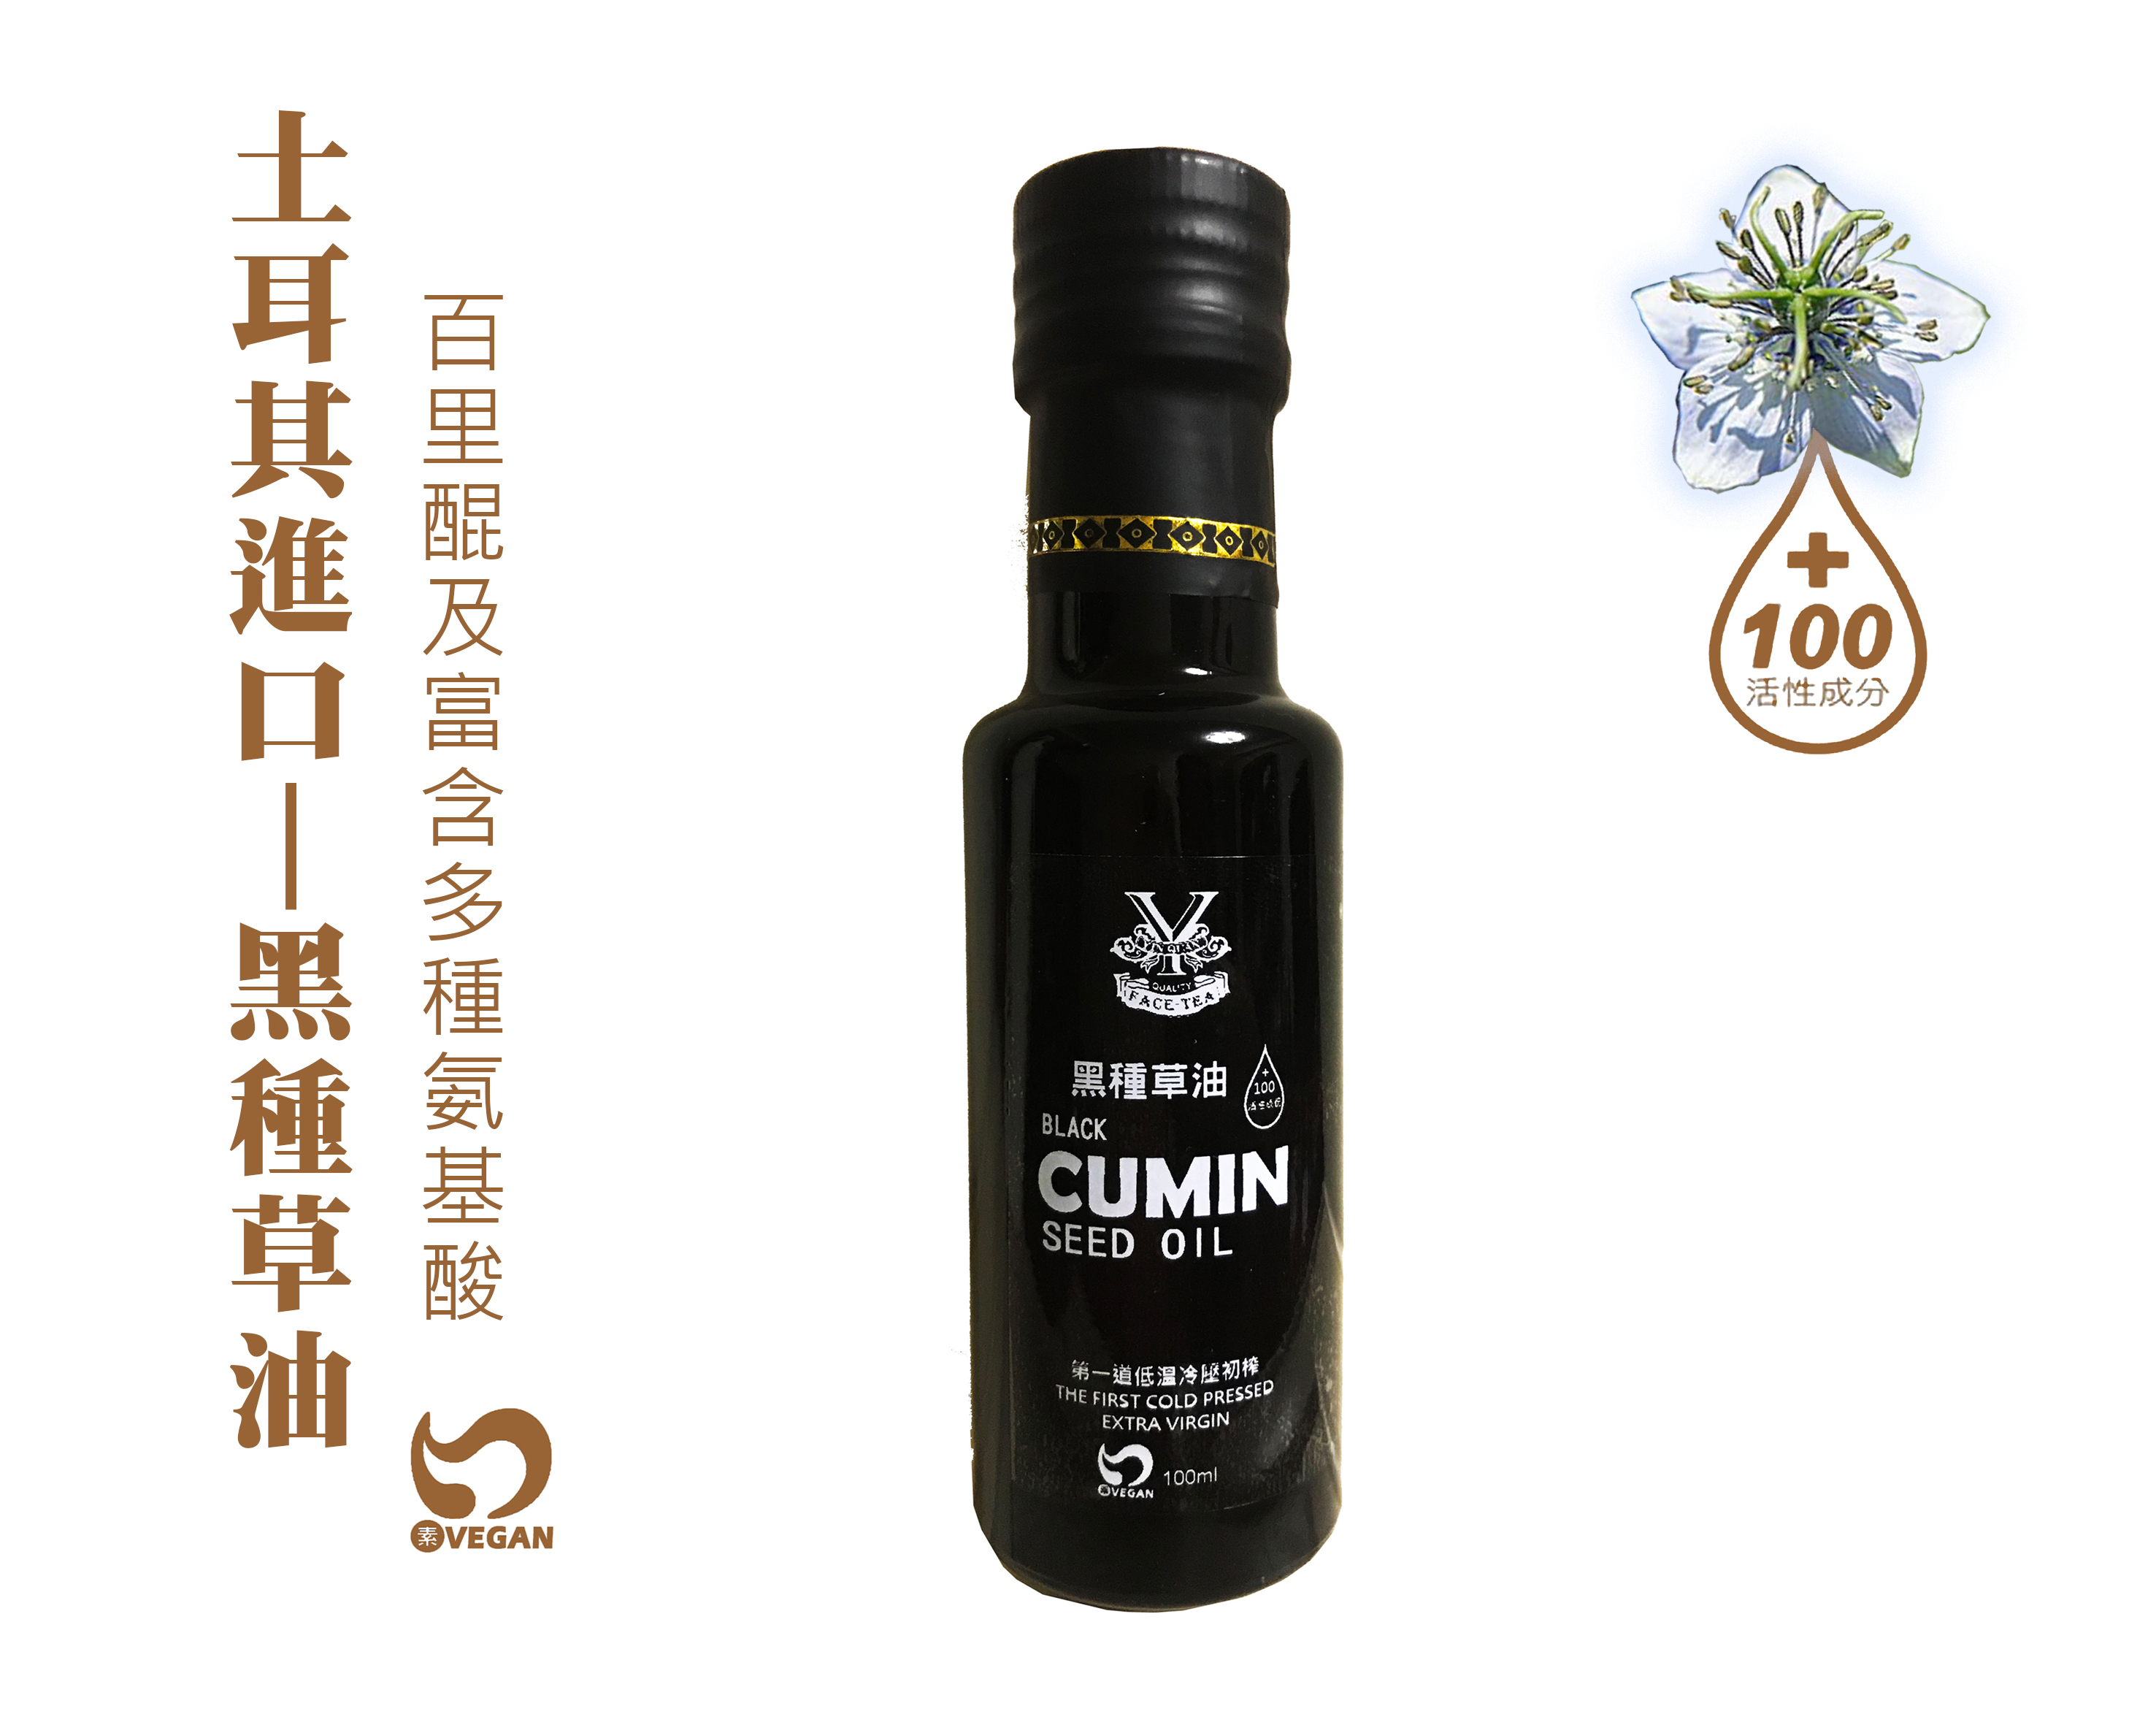 【胤詮FaceTea】黑種草油Black Cumin Oil